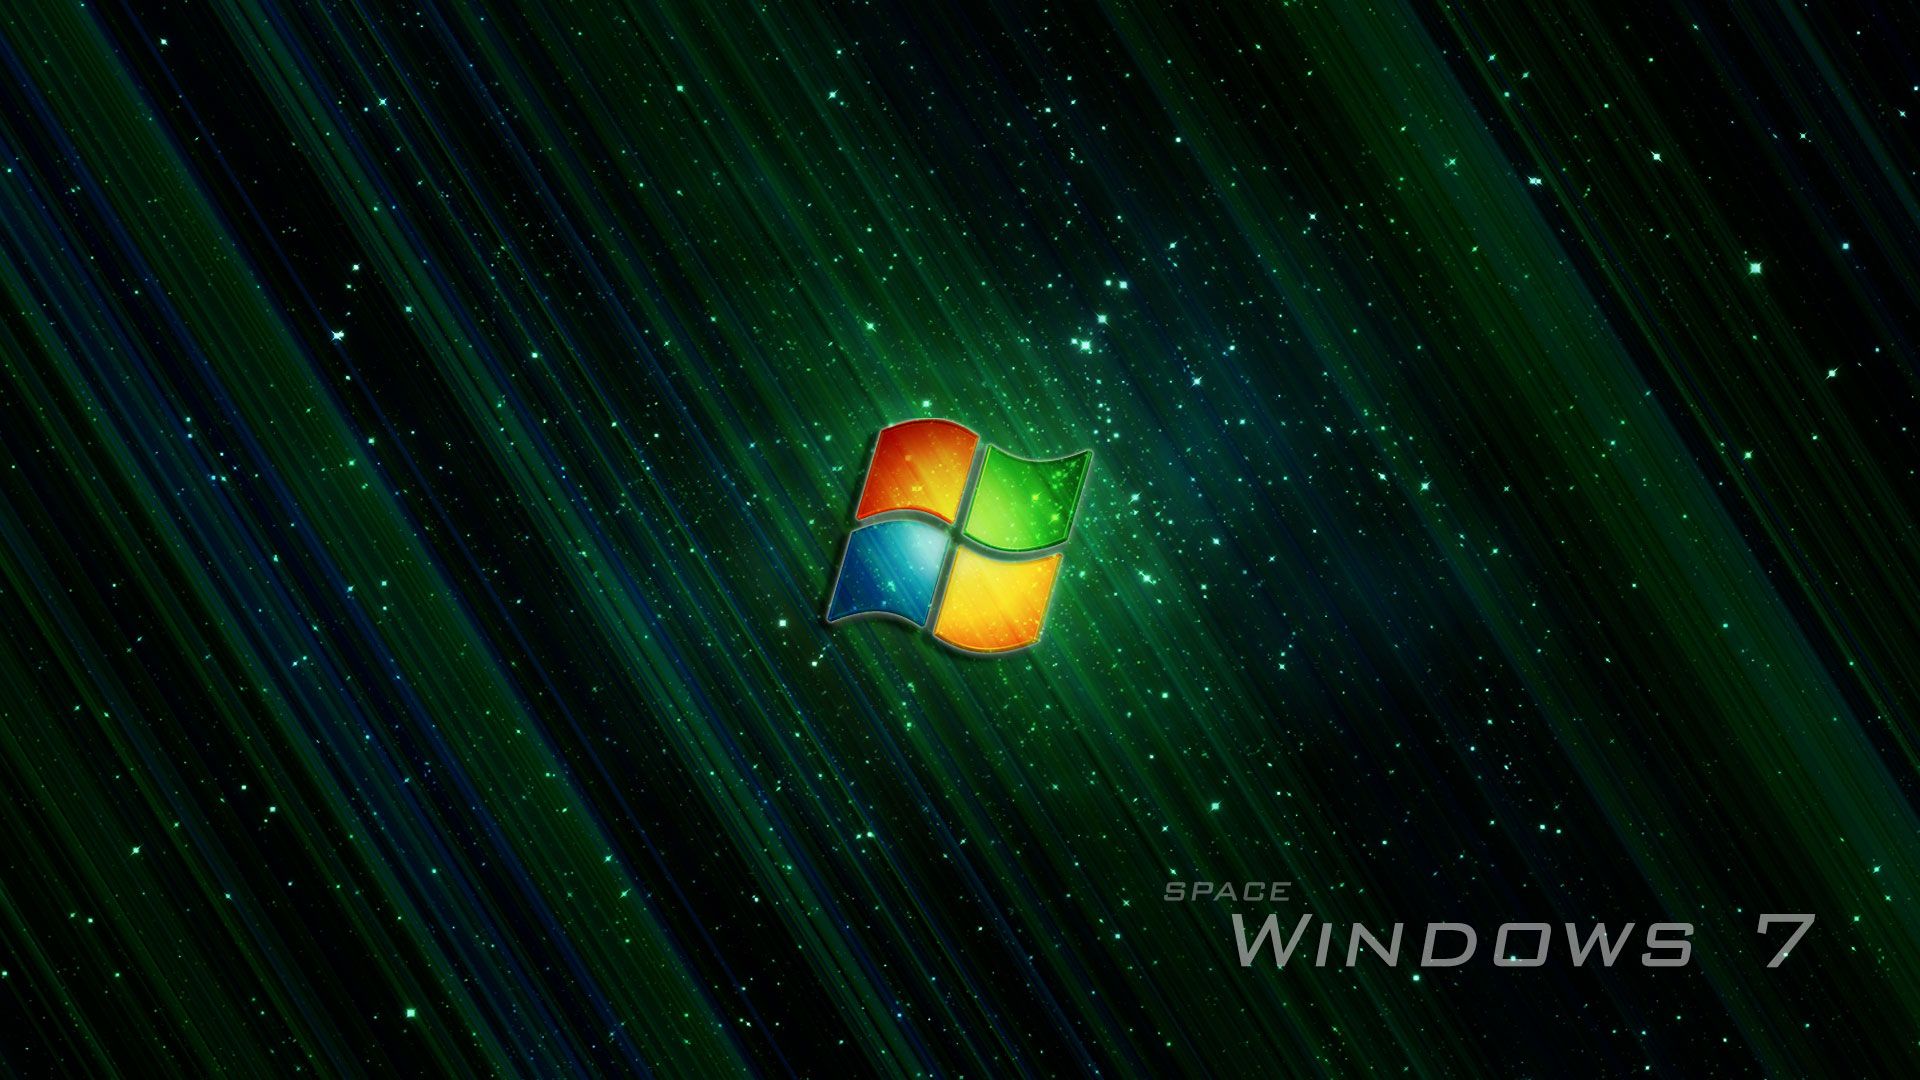 Windows 7 wallpaper space image - Dark Force,Science Fiction,Fan